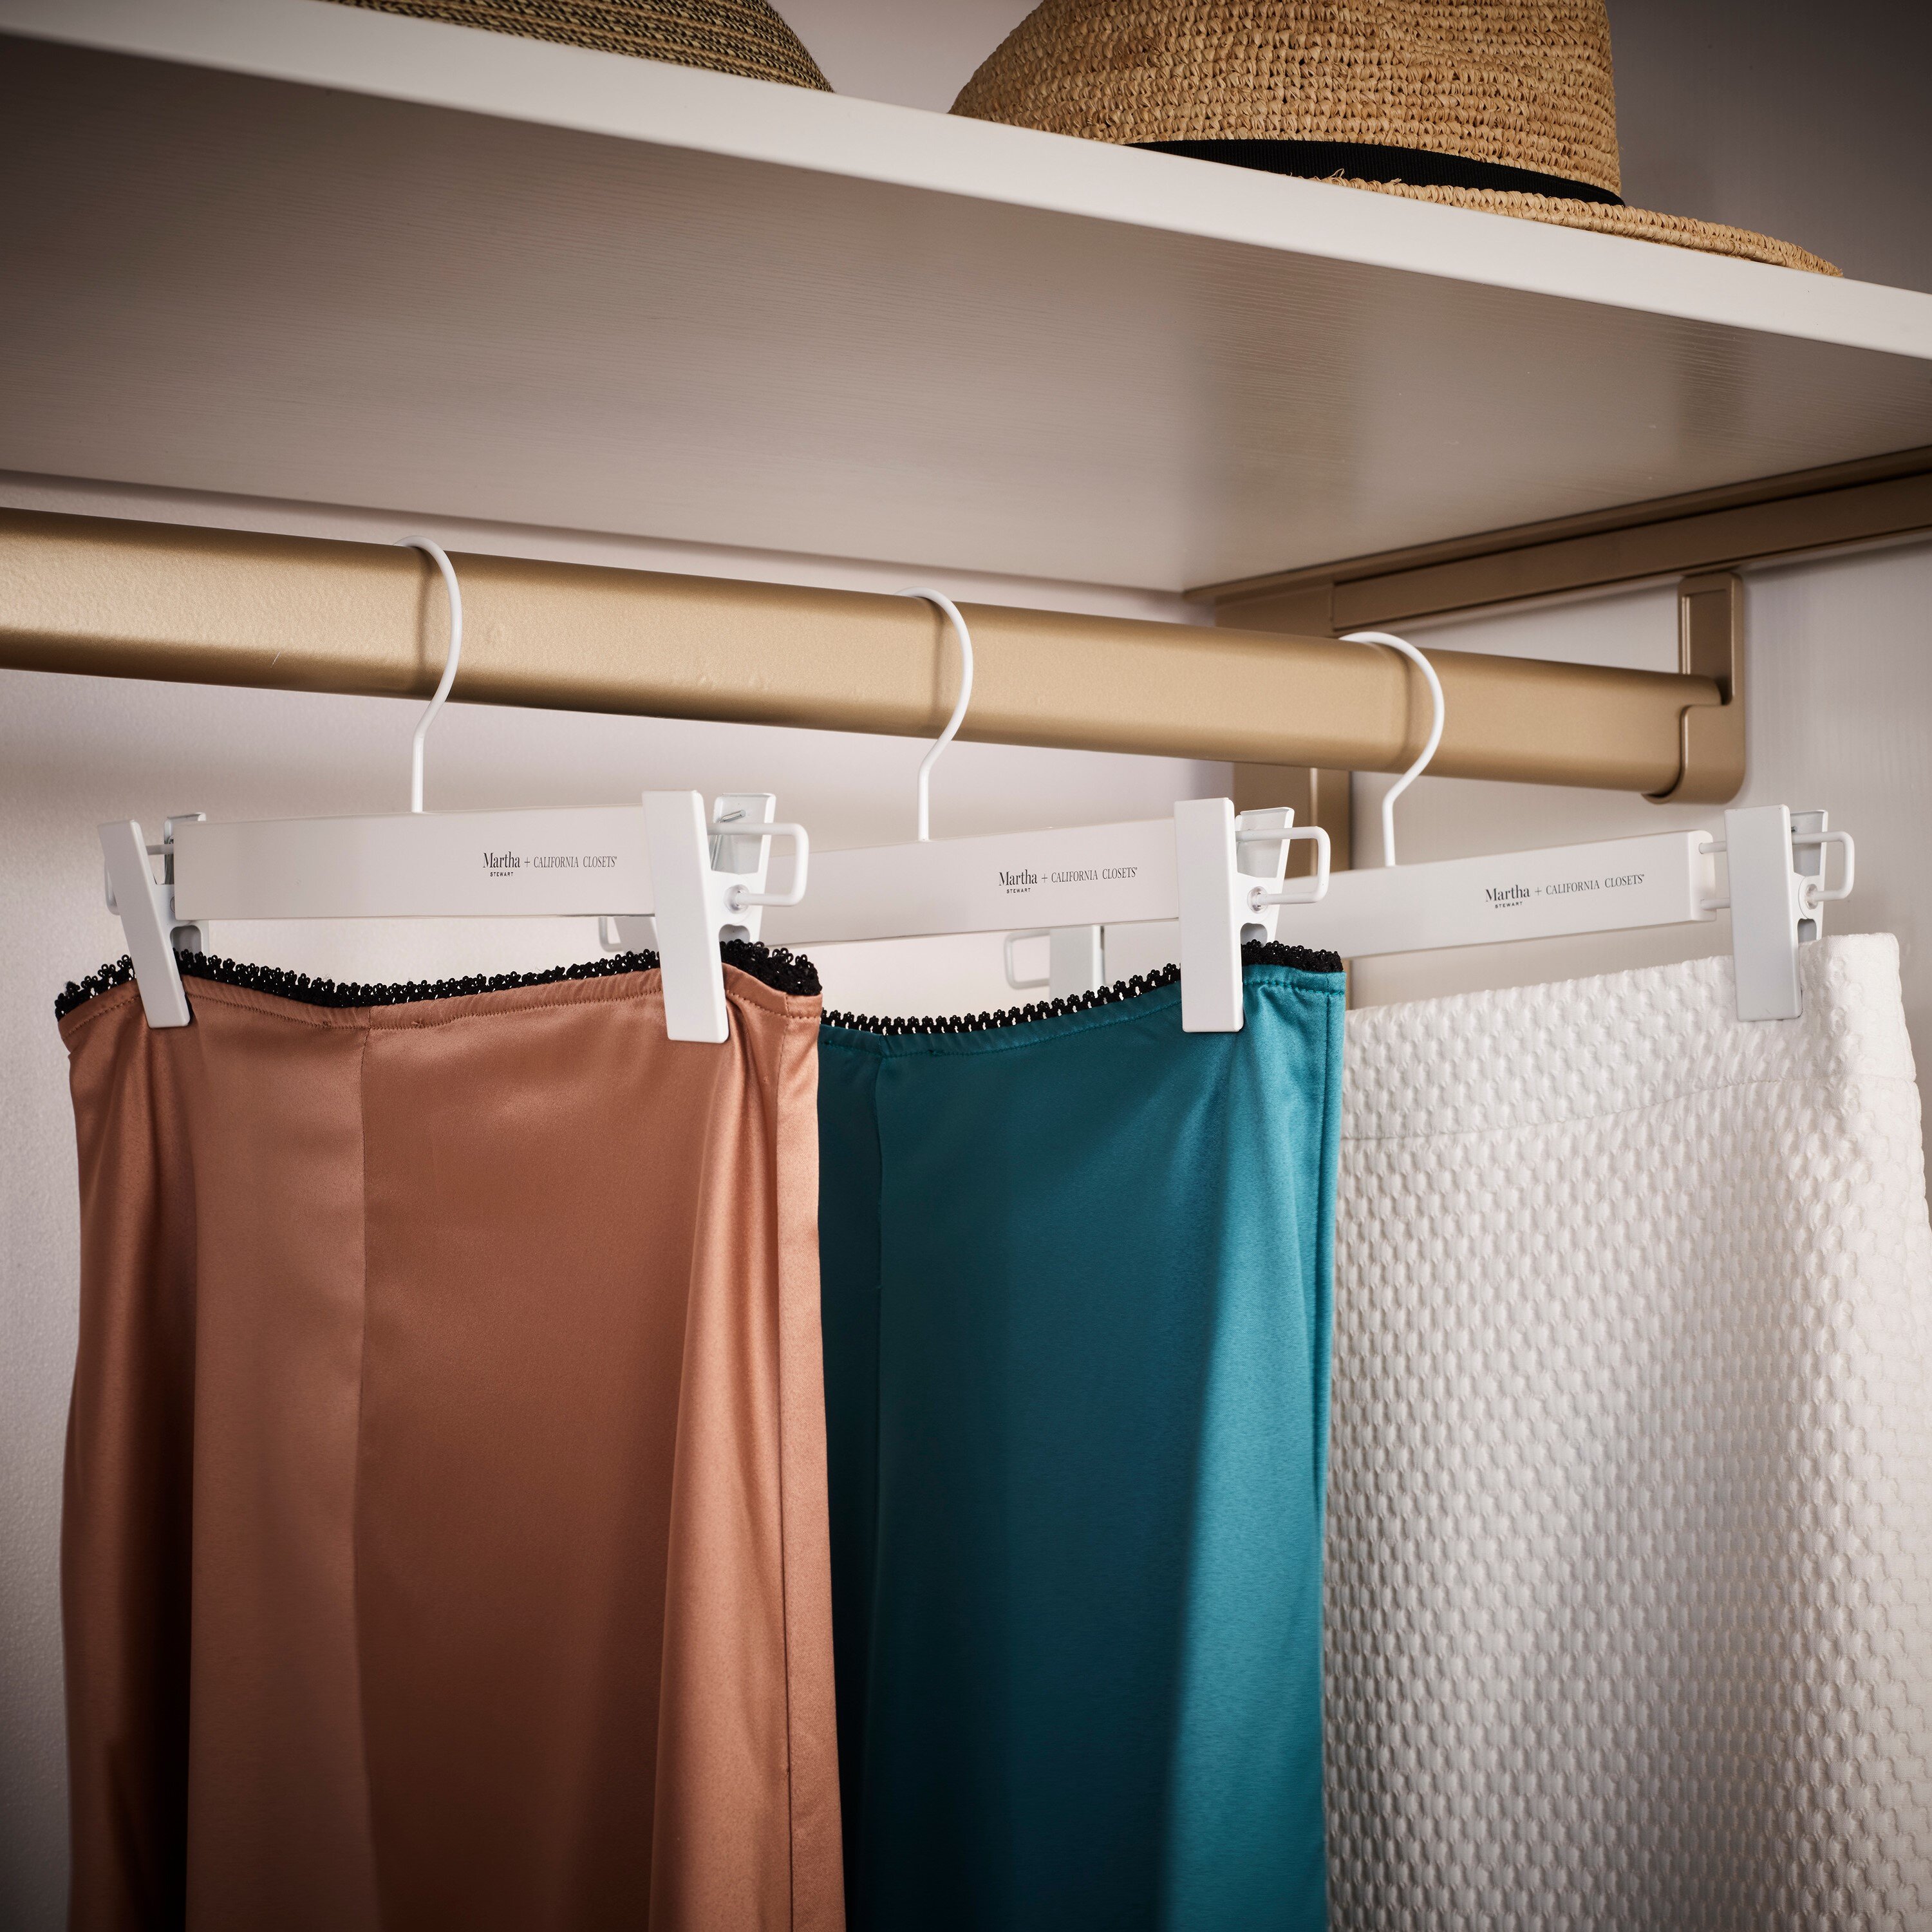 Junior Size Plastic Coordinate Attachment Skirt/Pant Hangers - 12